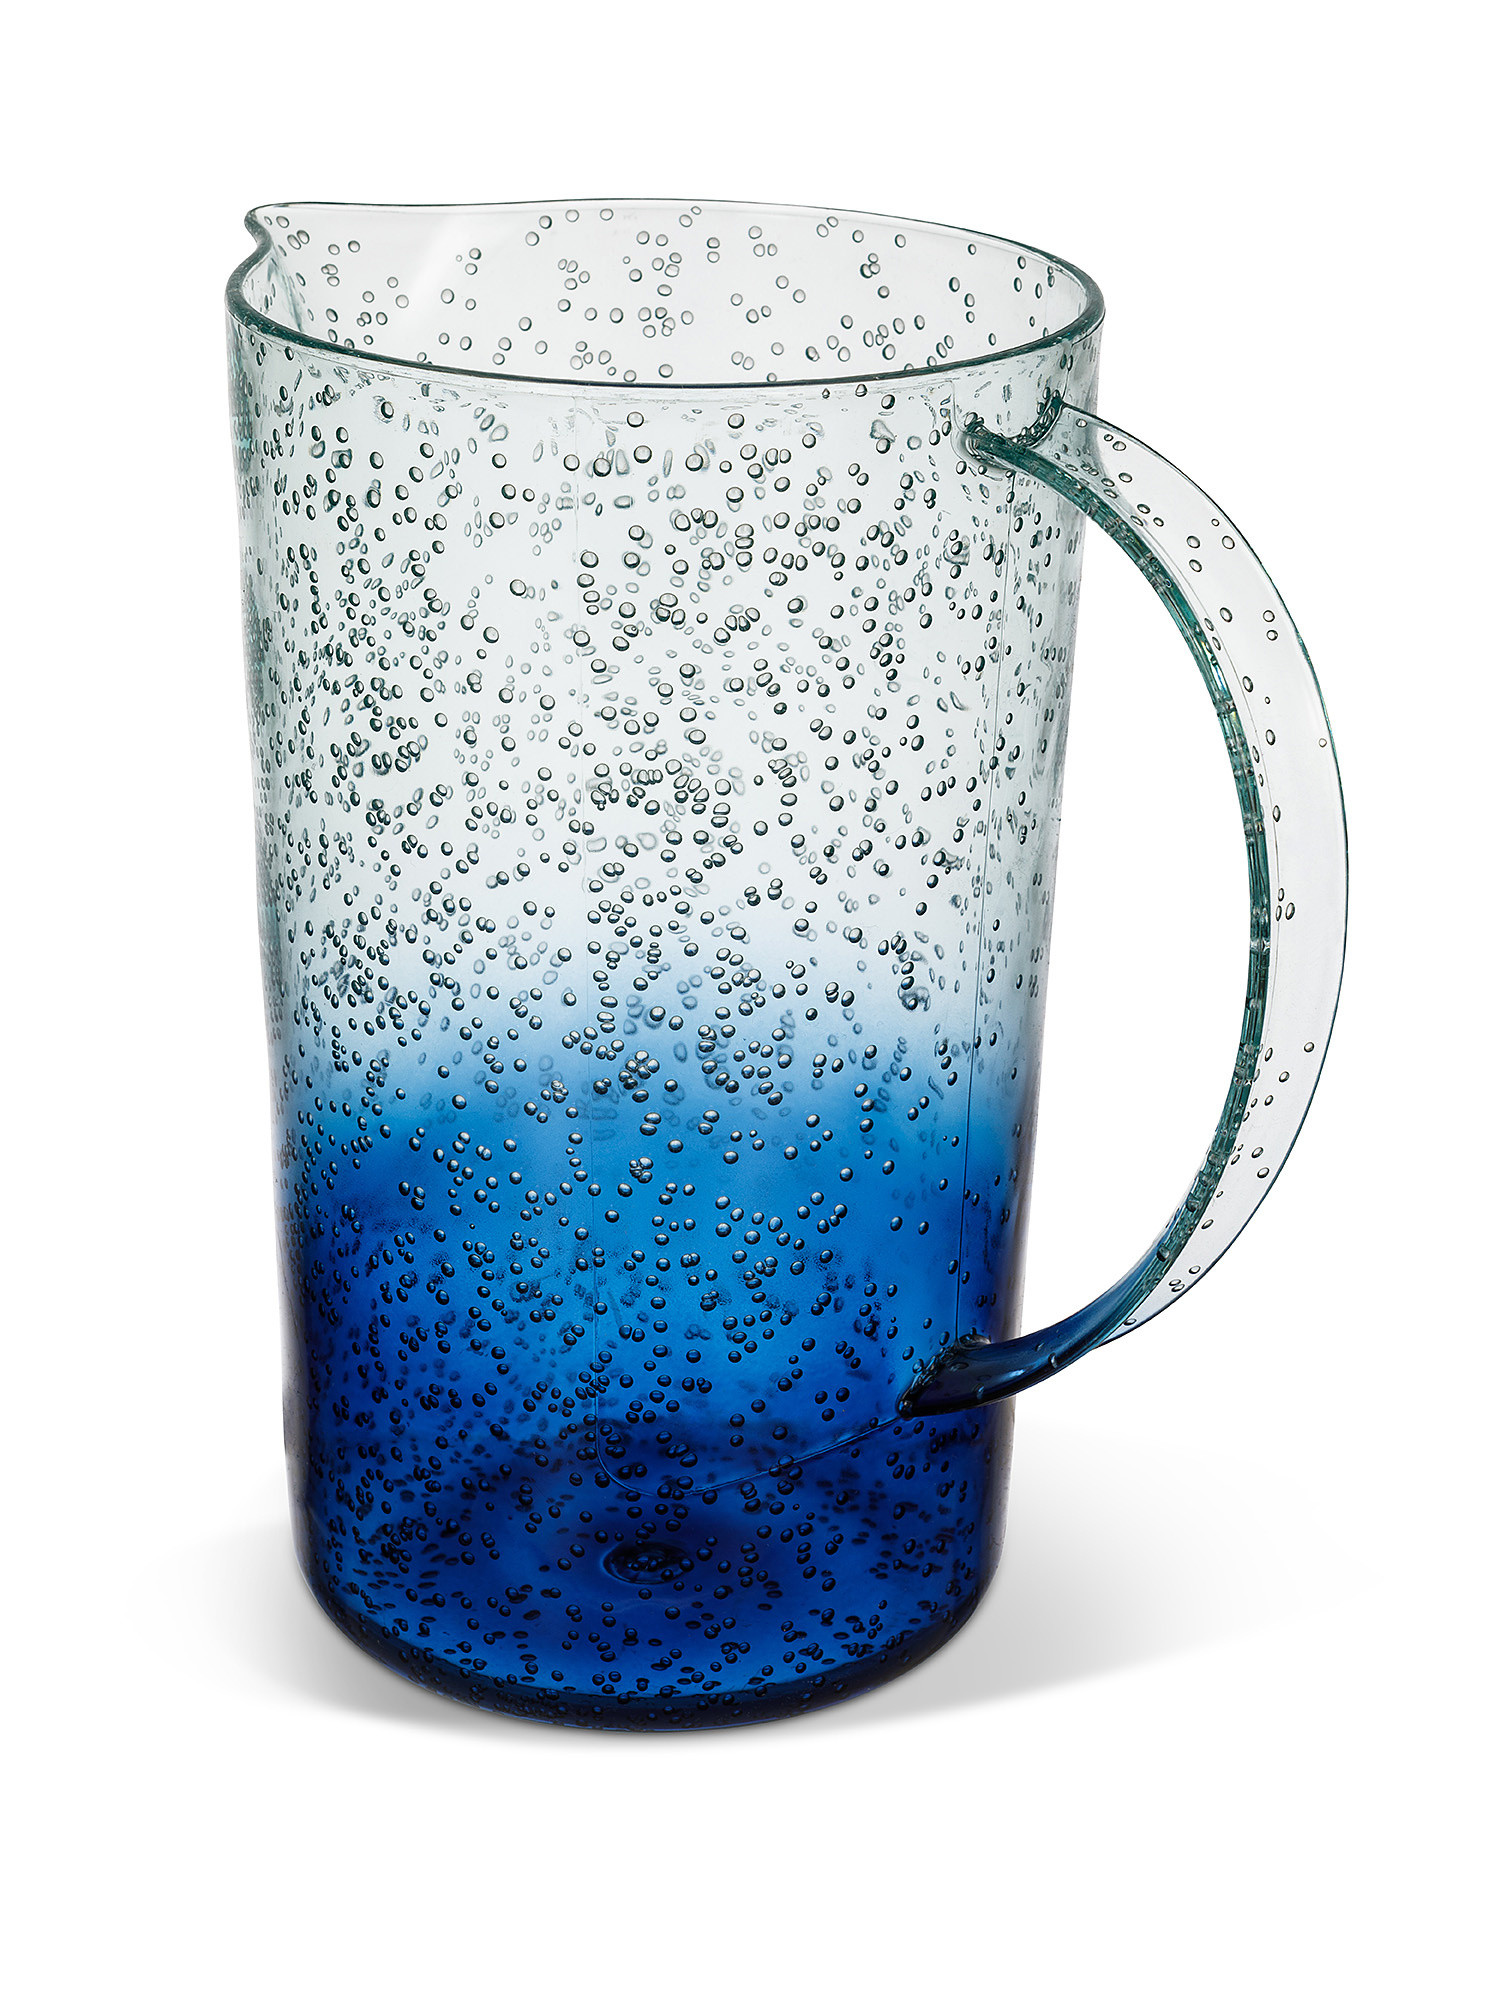 Caraffa plastica trasparente effetto bolle, Azzurro, large image number 1